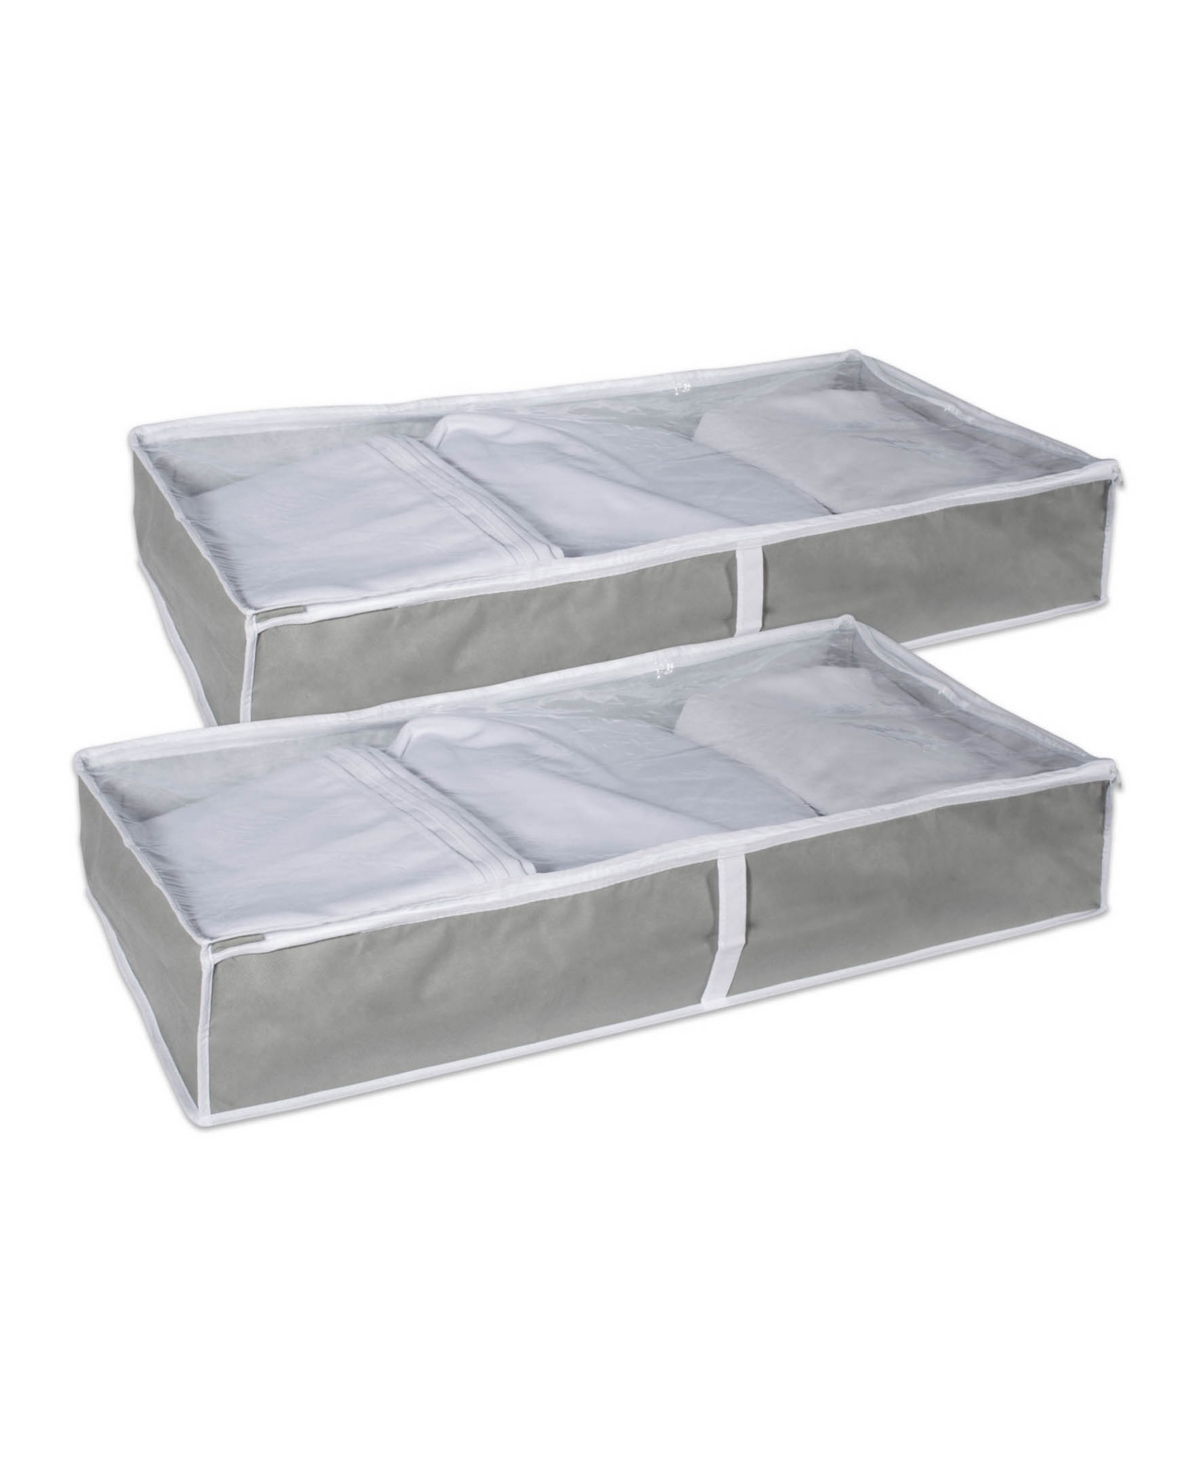 Soft Storage Set of 2 - Gray